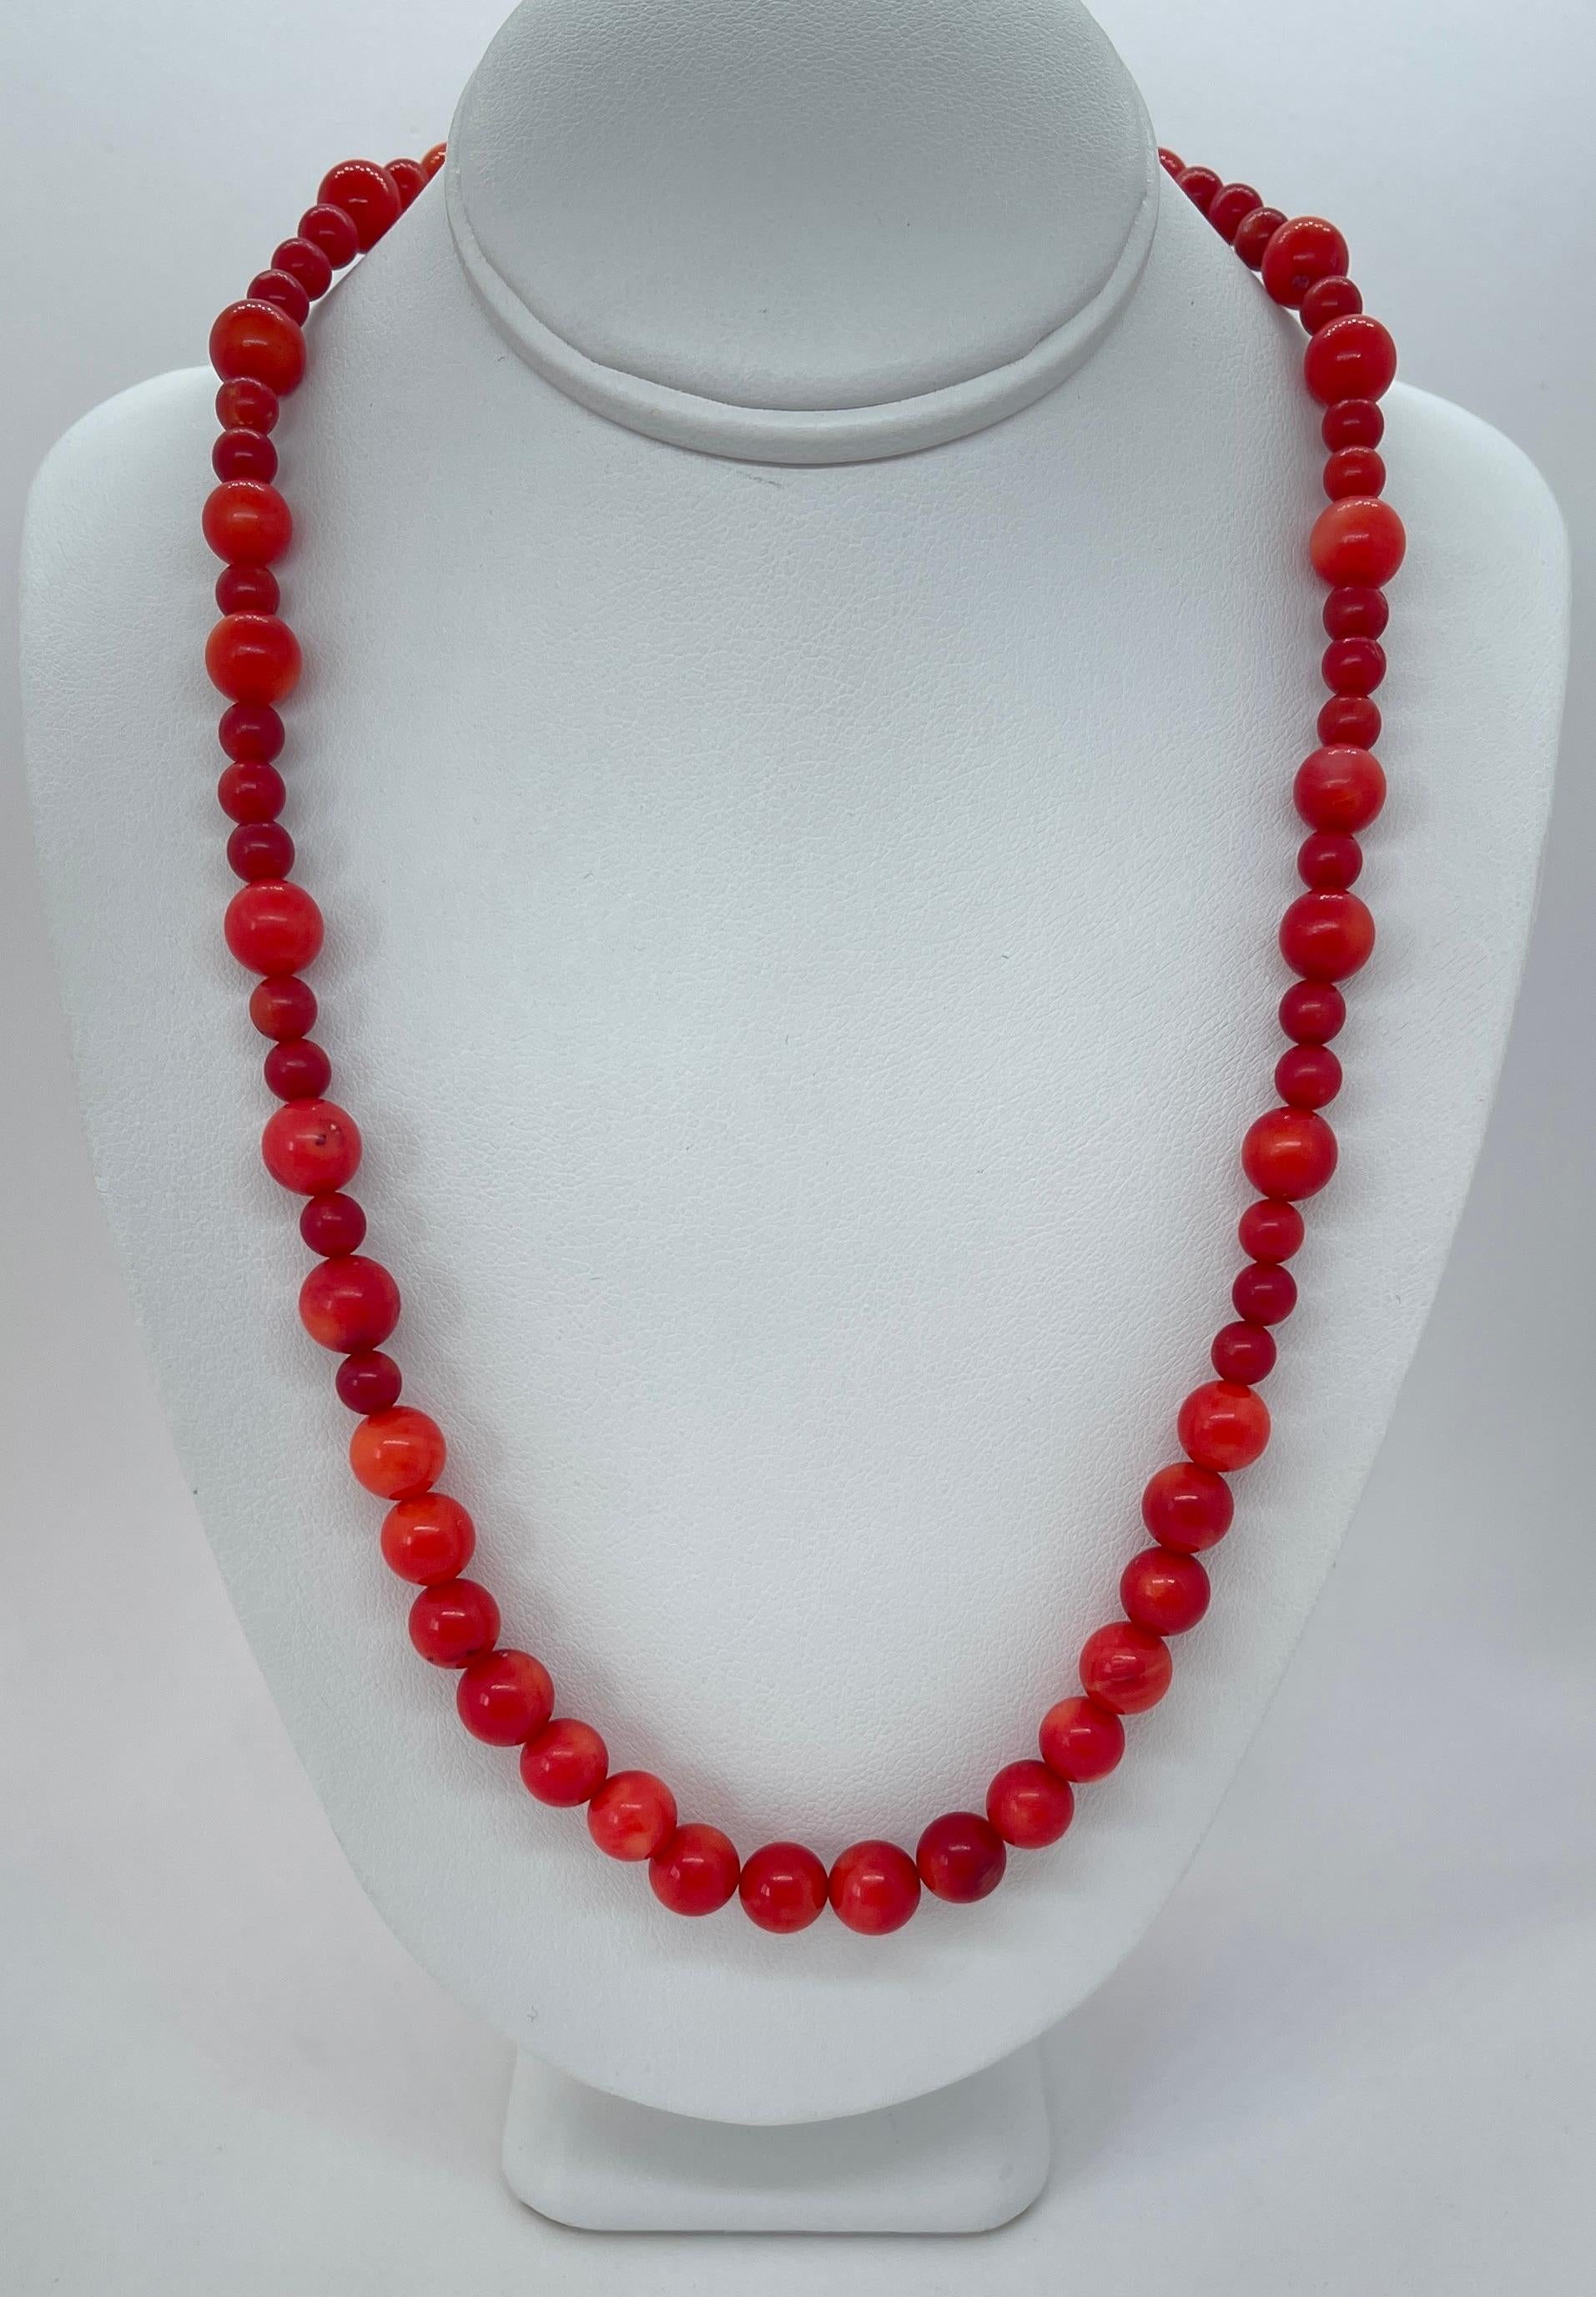 Eine schöne Vintage-Korallenkette mit dunkelroten bis mittelroten Tönen aus den 1950er Jahren.  
Die Halskette besteht aus 16 gleichmäßigen Perlen auf der Vorderseite, die dann in abwechselnd große und kleine Perlen übergehen (siehe Fotos).  
Es ist